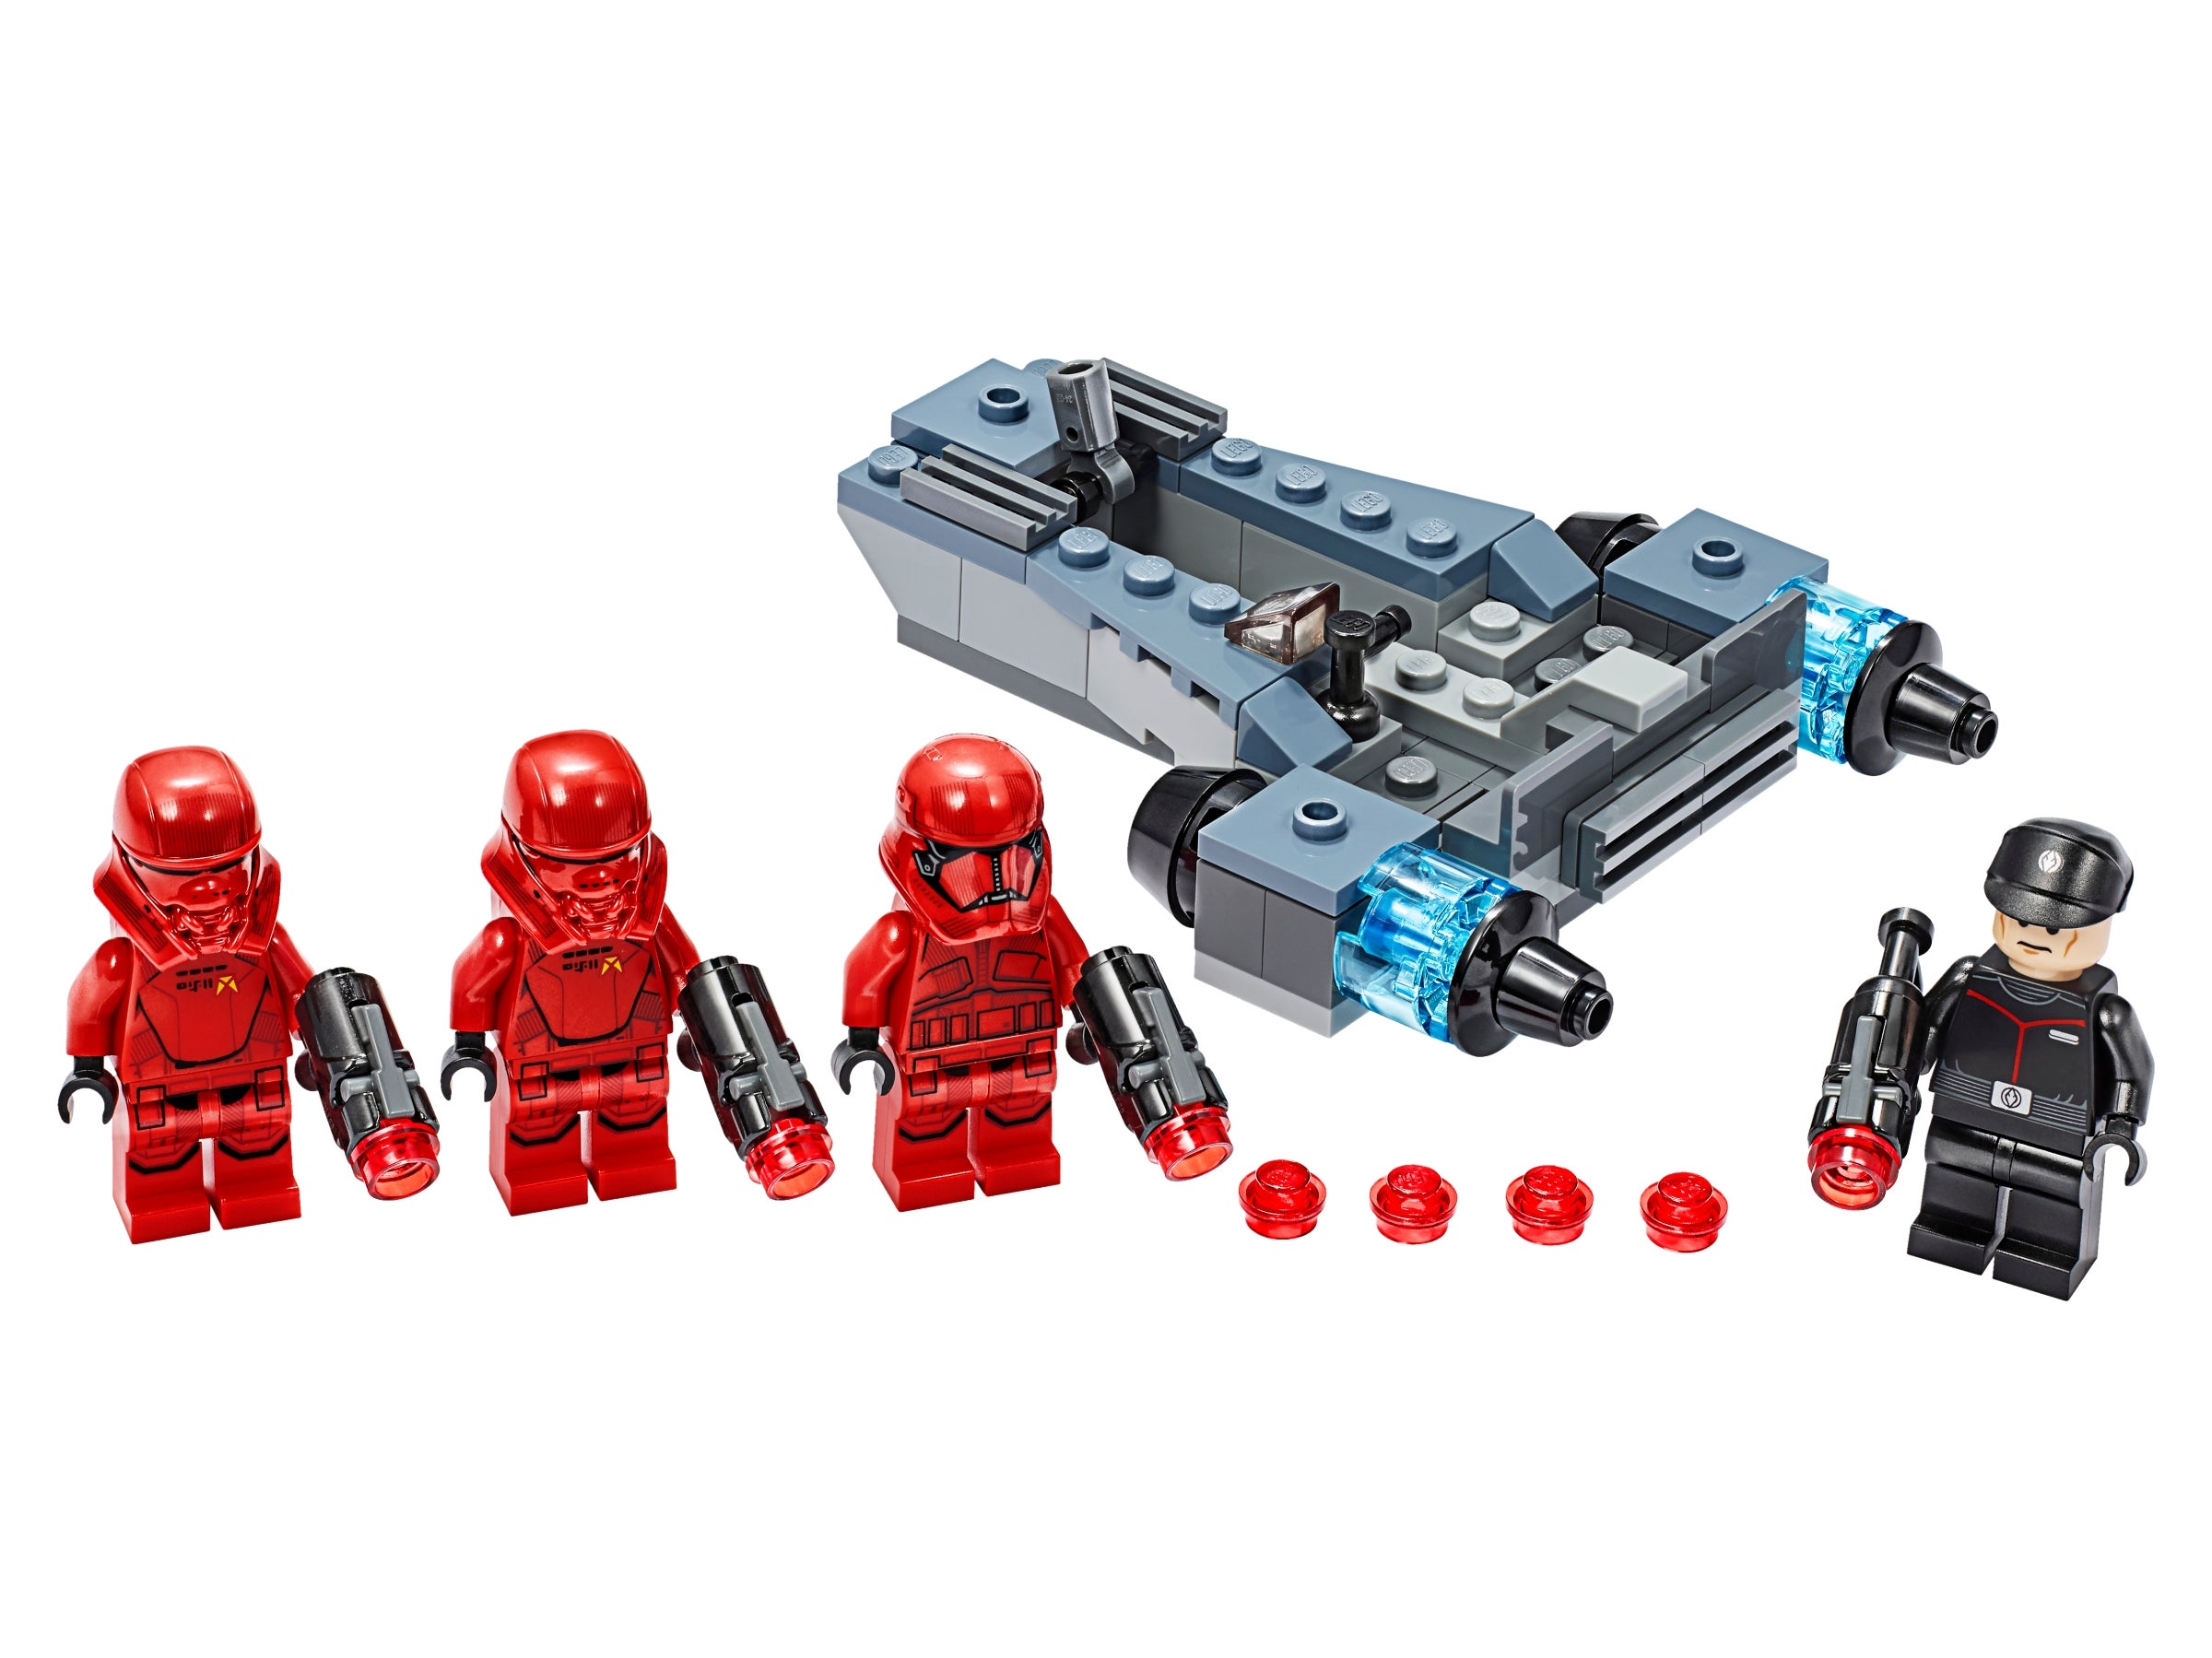 LEGO Star Wars First Order SIth Battle Speeder from set 75266